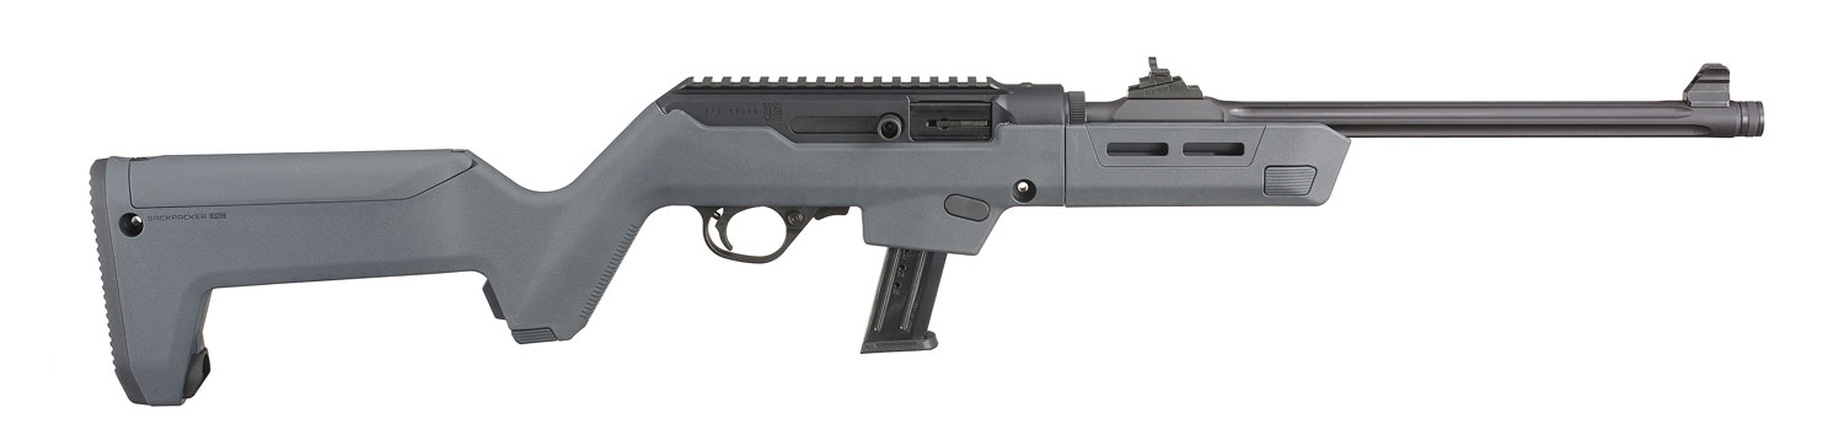 Don shot - Ruger PC Carbine, Magpul Back Packer